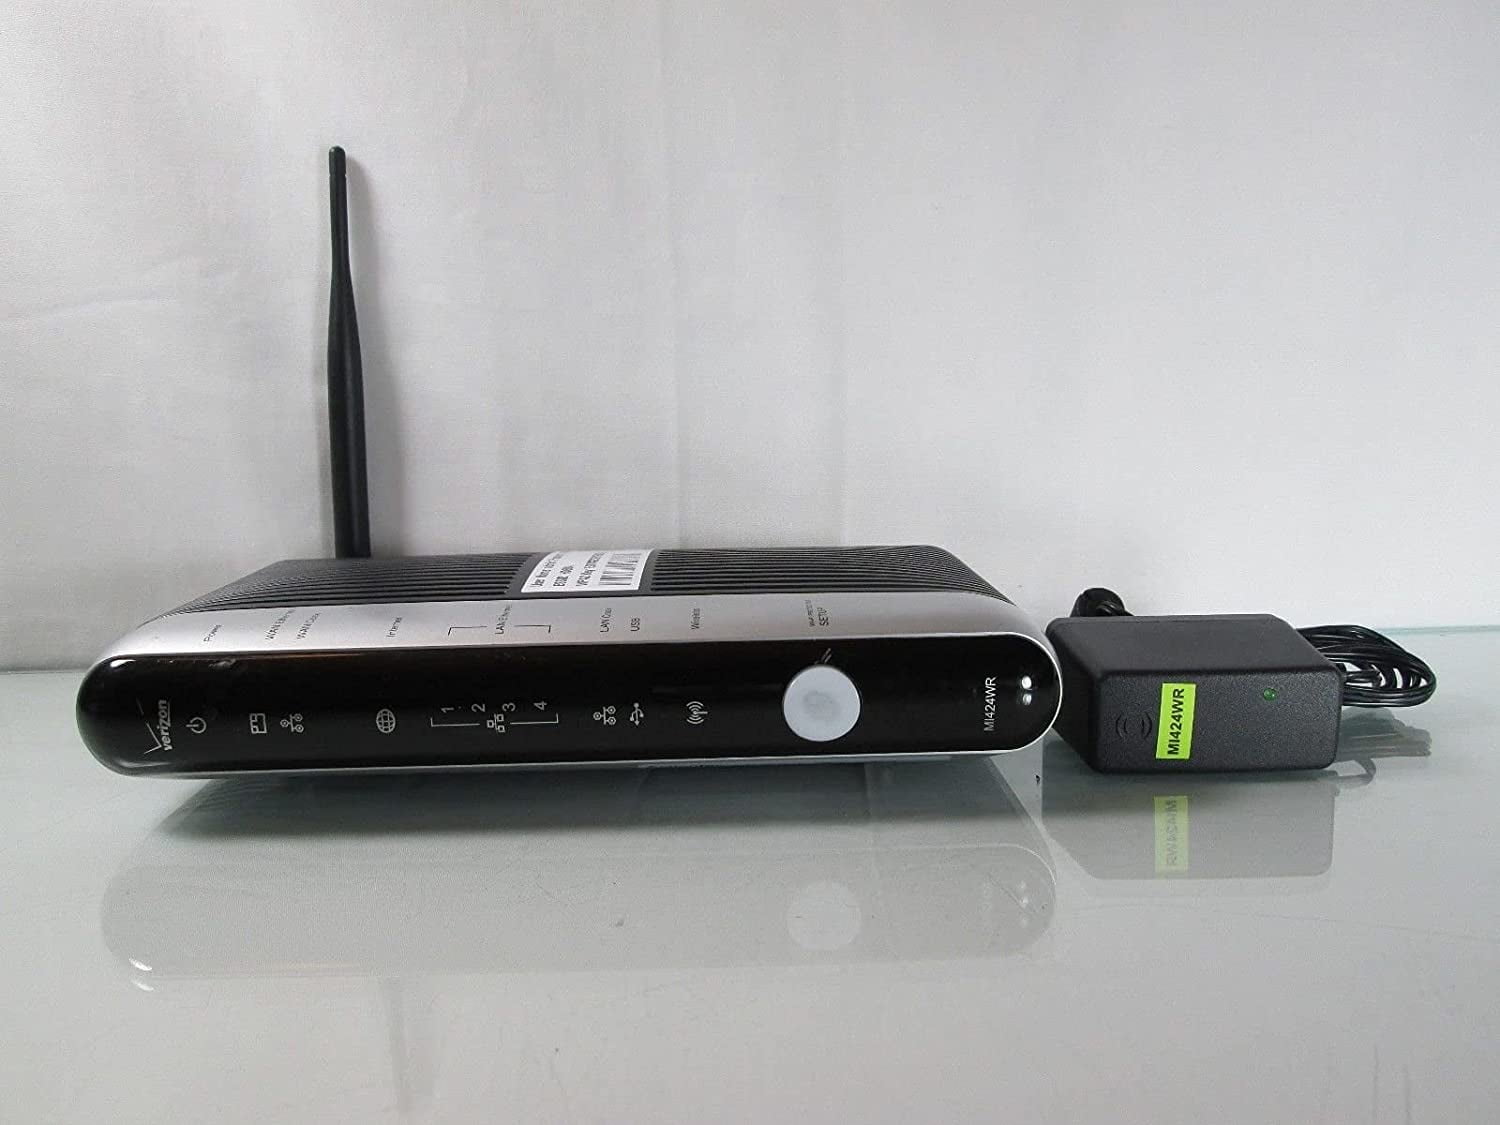 Verizon FIOS  Actiontec MI424WR Rev I Gigabit WiFi Wireless N Router 